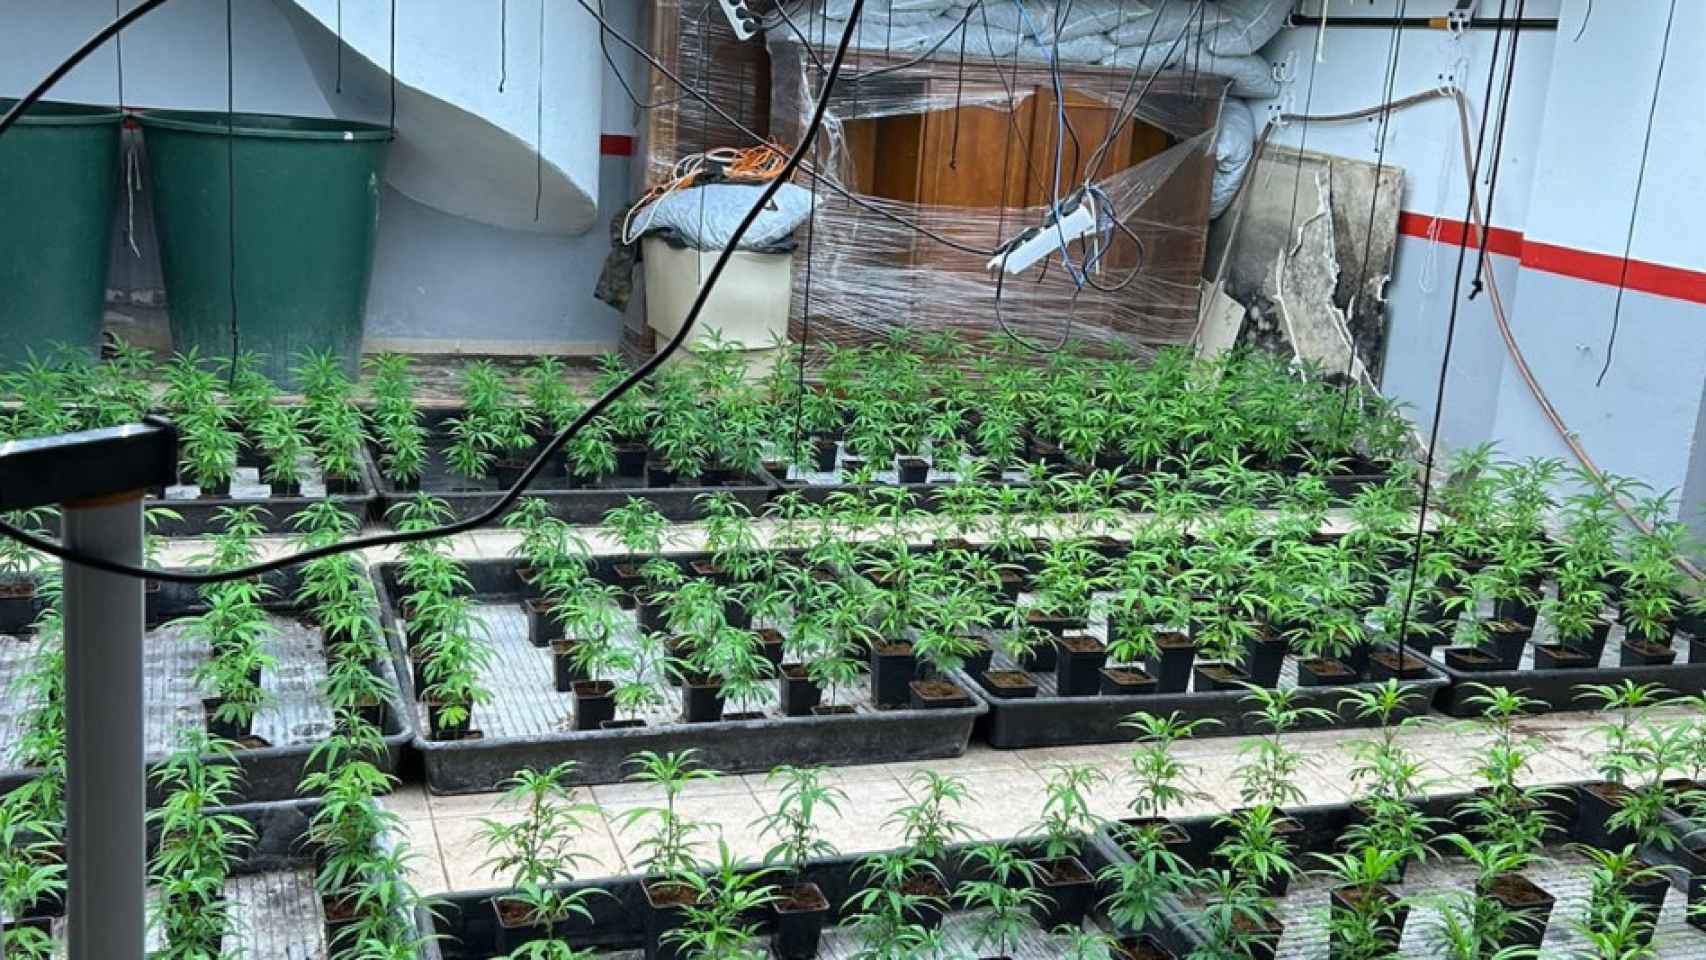 La casa que el grupo criminal utilizaba para cultivar marihuana en Alella